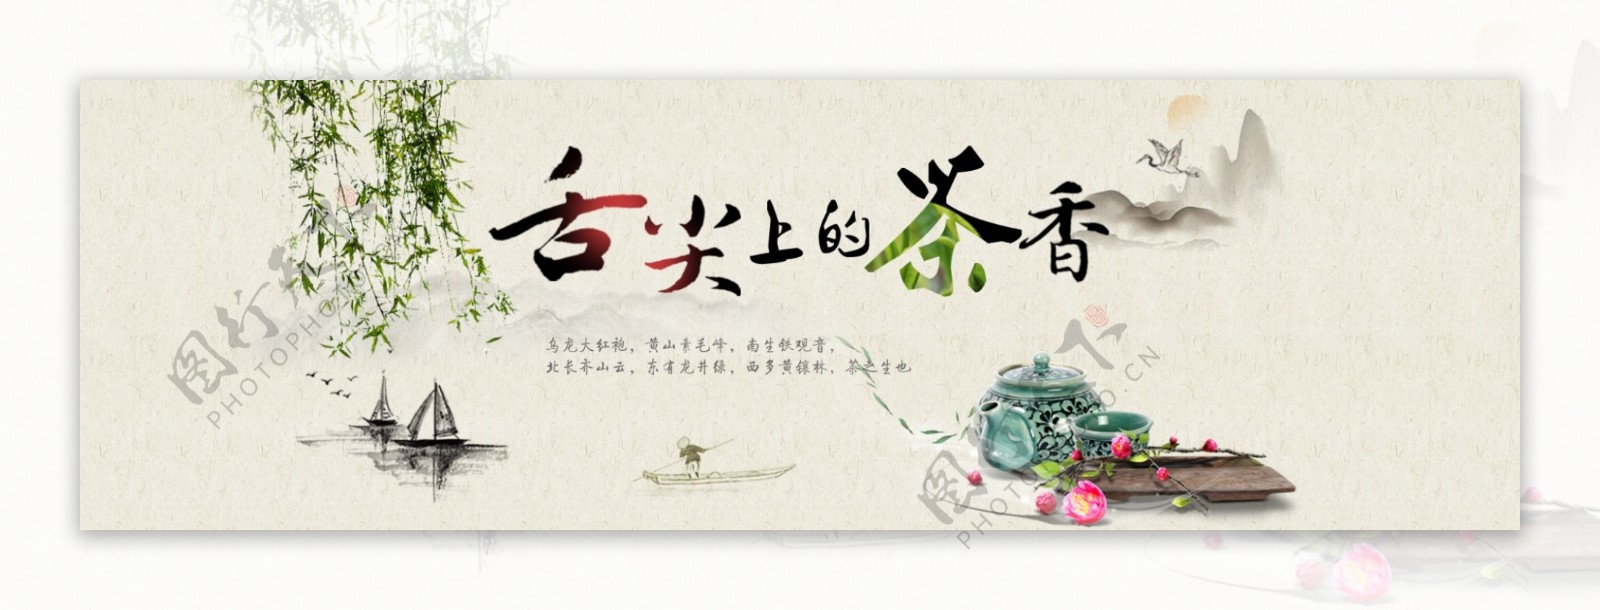 中国风淘宝茶叶店海报